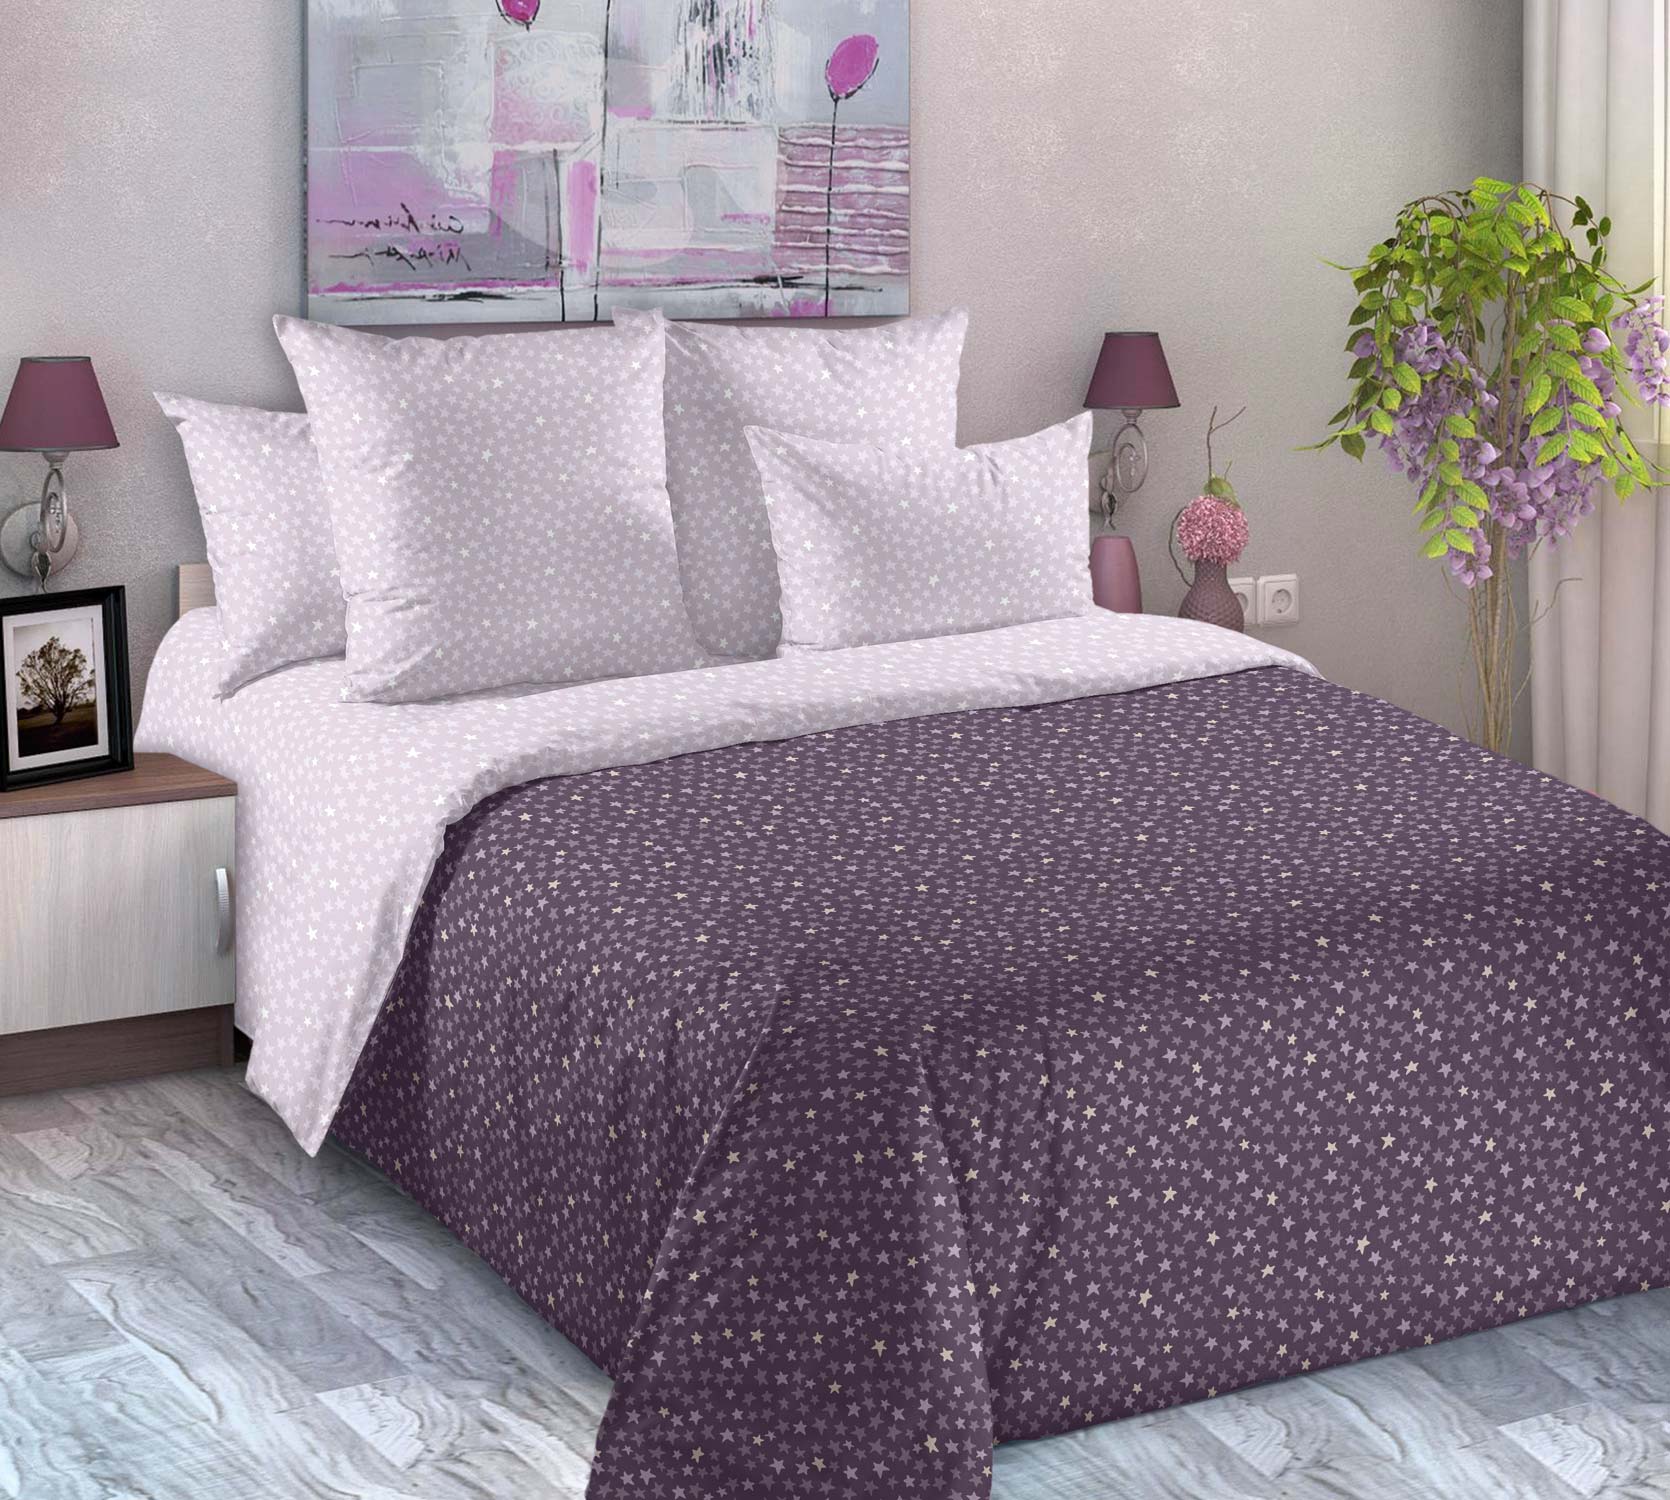 Комплект для сна с одеялом «Вселенная 7», 2 спальный, перкаль фото